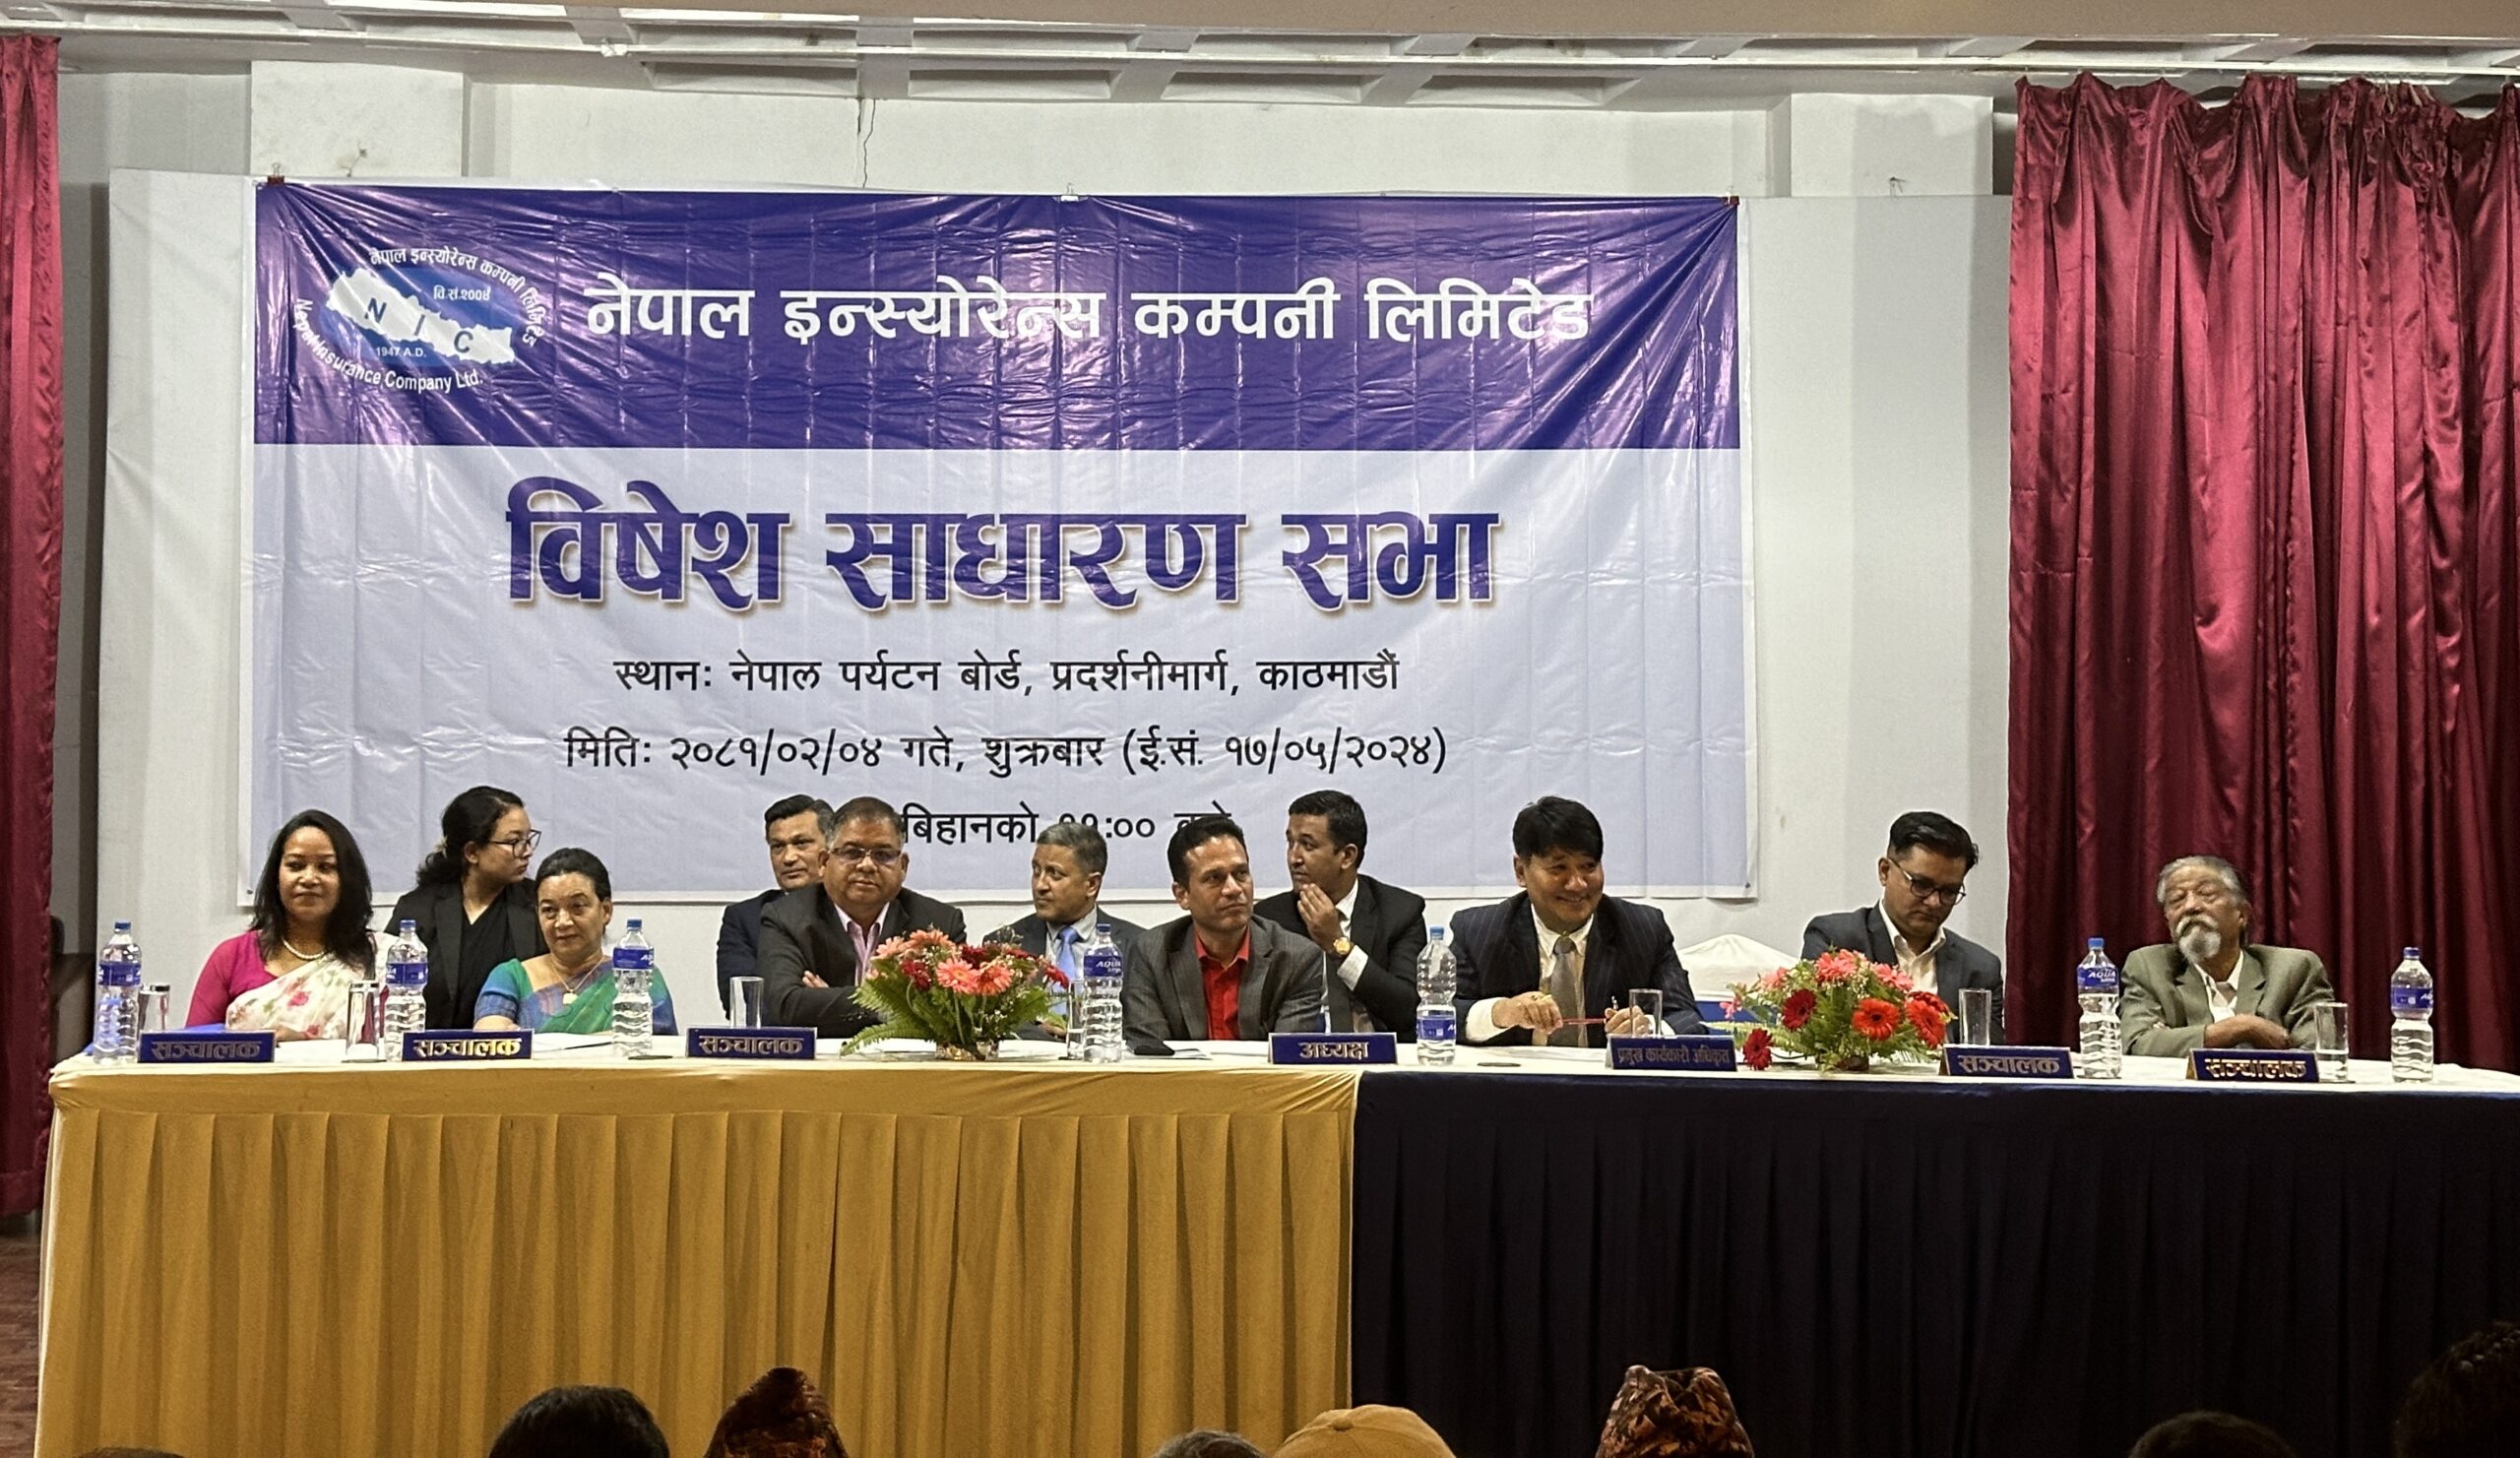 नेपाल इन्स्योरेन्सको विशेष साधारण सभा सम्पन्न, हकप्रद निष्काशनको प्रस्ताव पारित